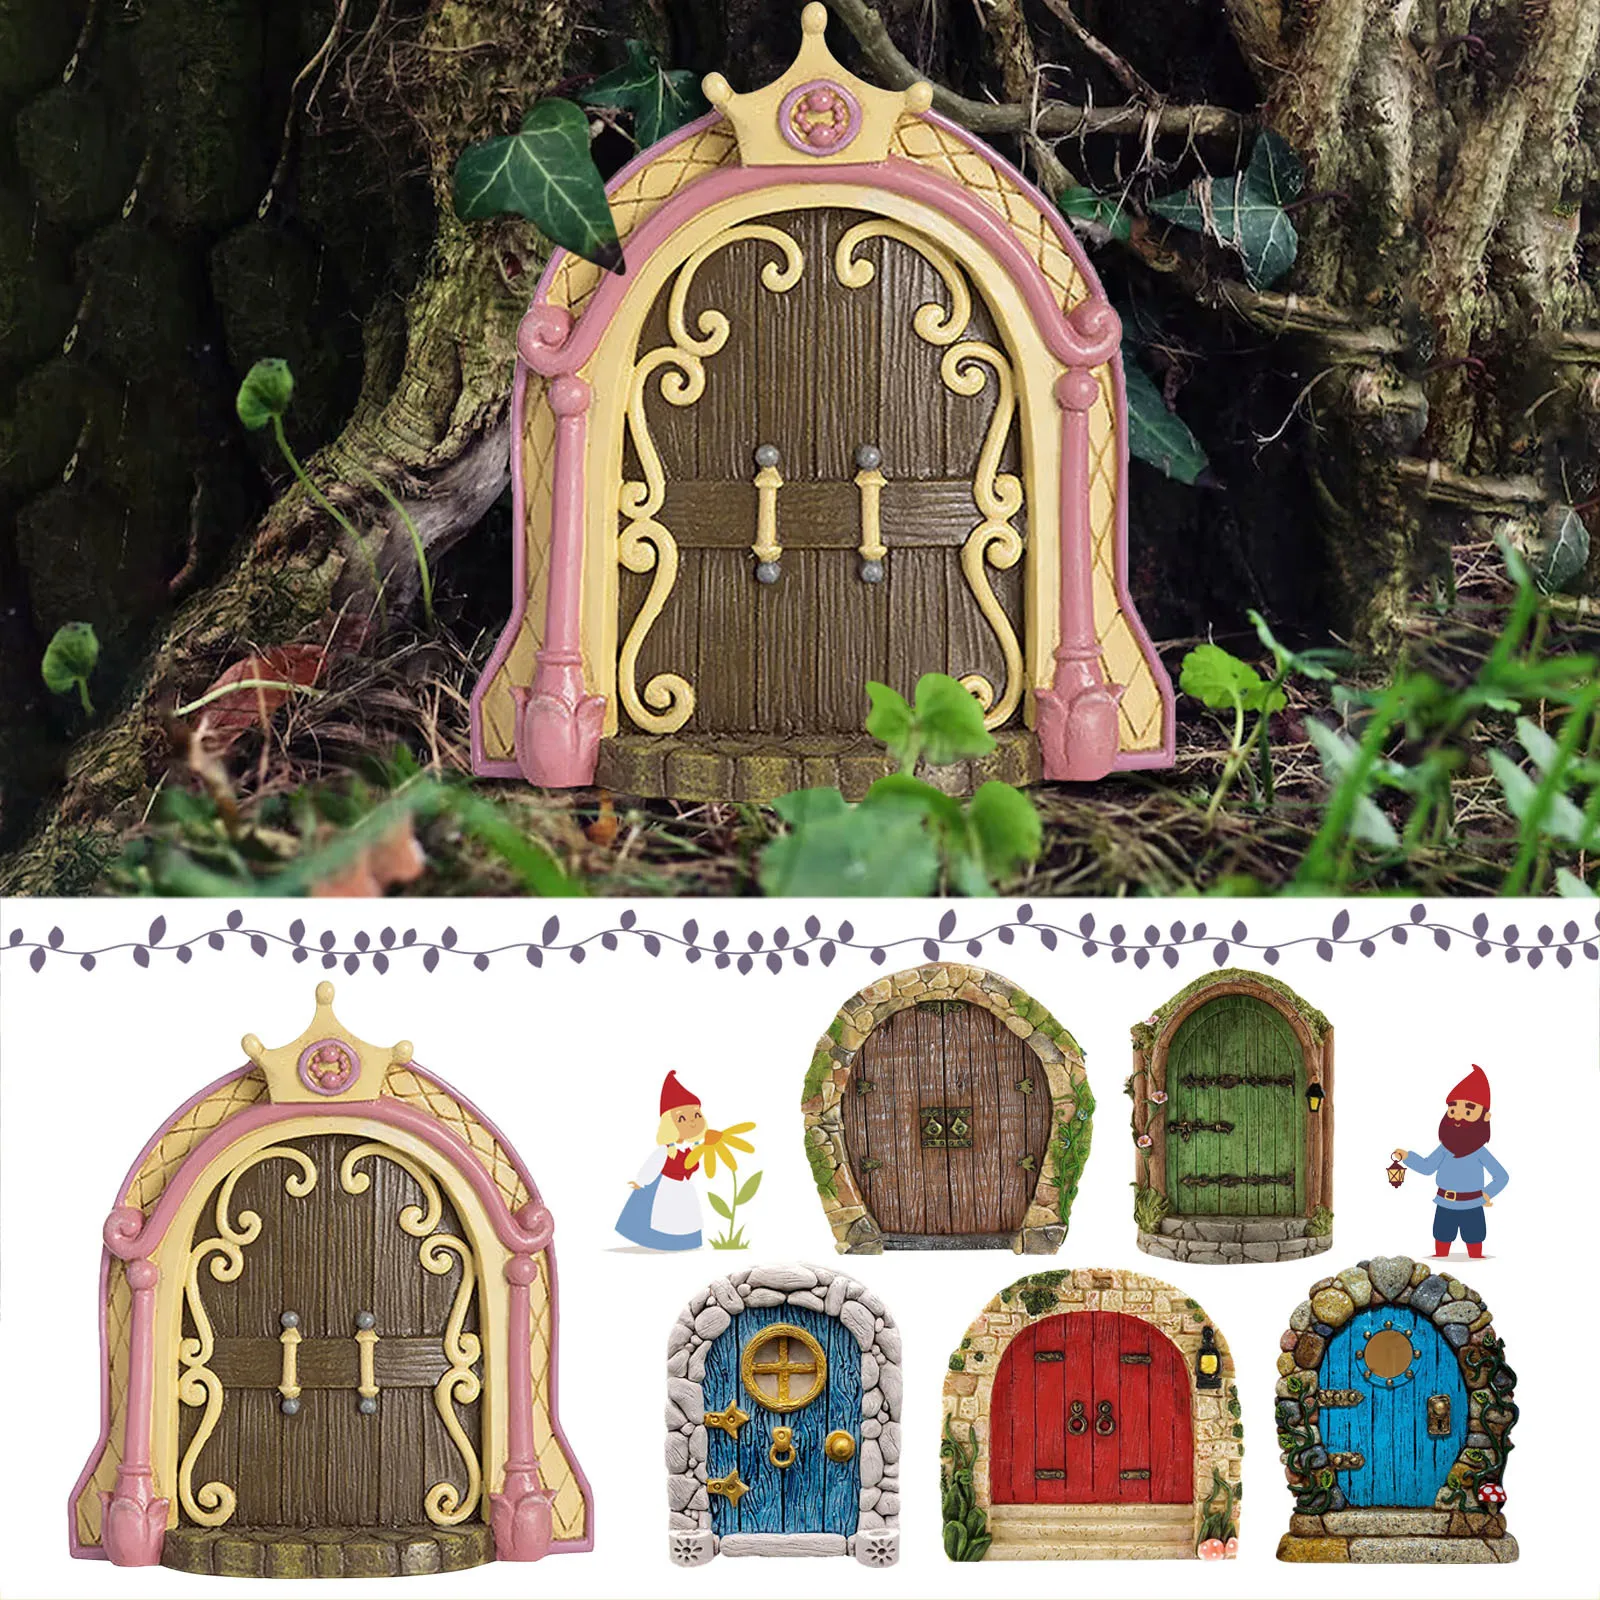 

Miniature Fairy Gnome Door Figurines Elf Home for Yard Art Garden Tree Sculpture Statues Decor Outdoor Decor Fairy Gardens Doors